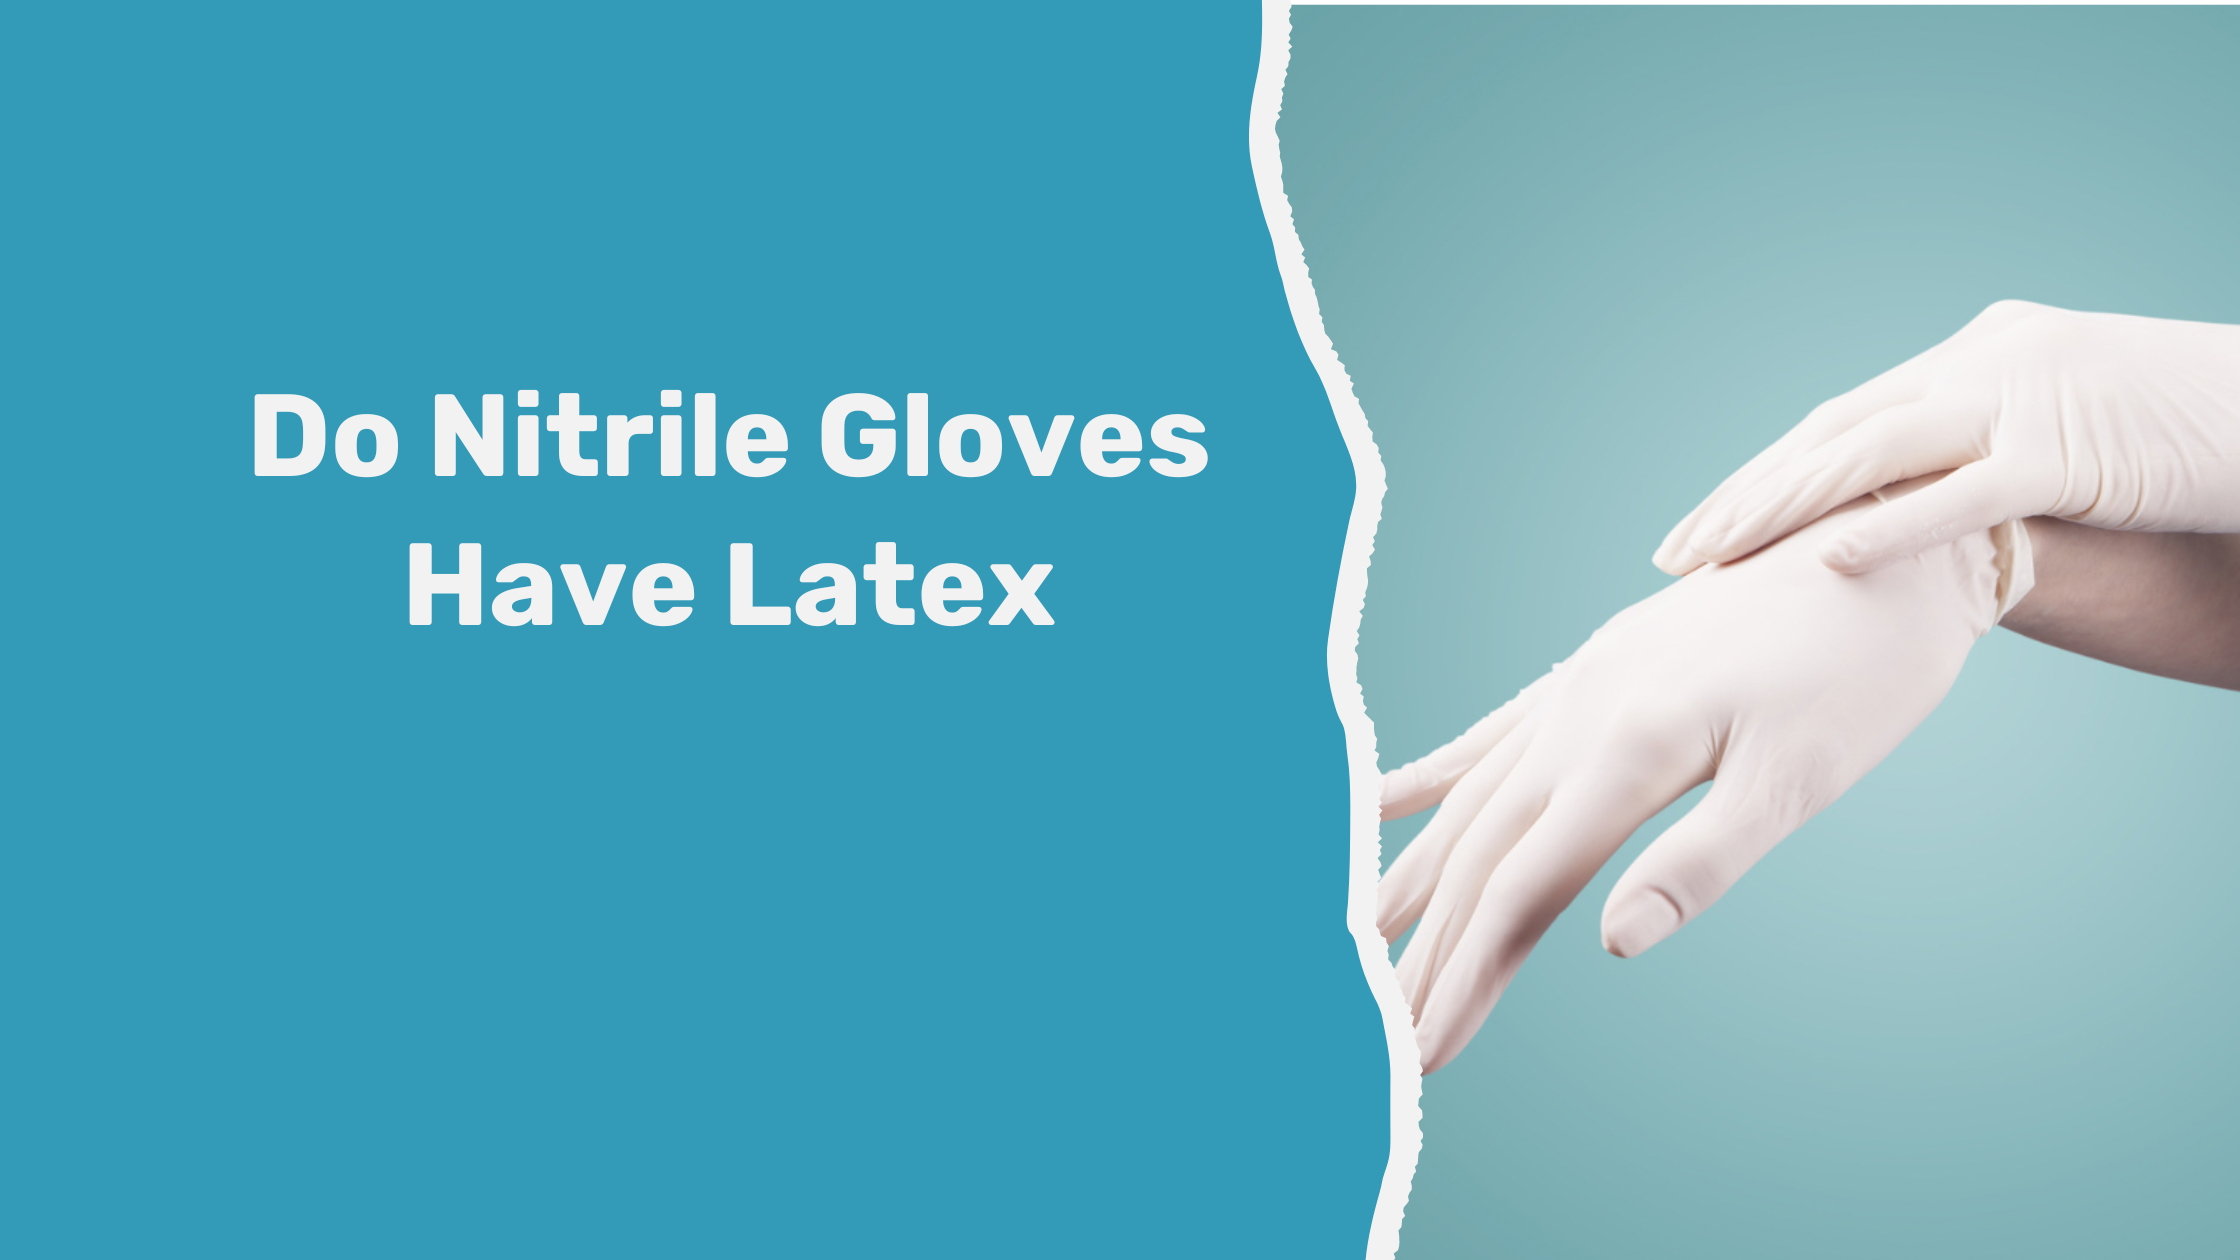 Do Nitrile Gloves Have Latex